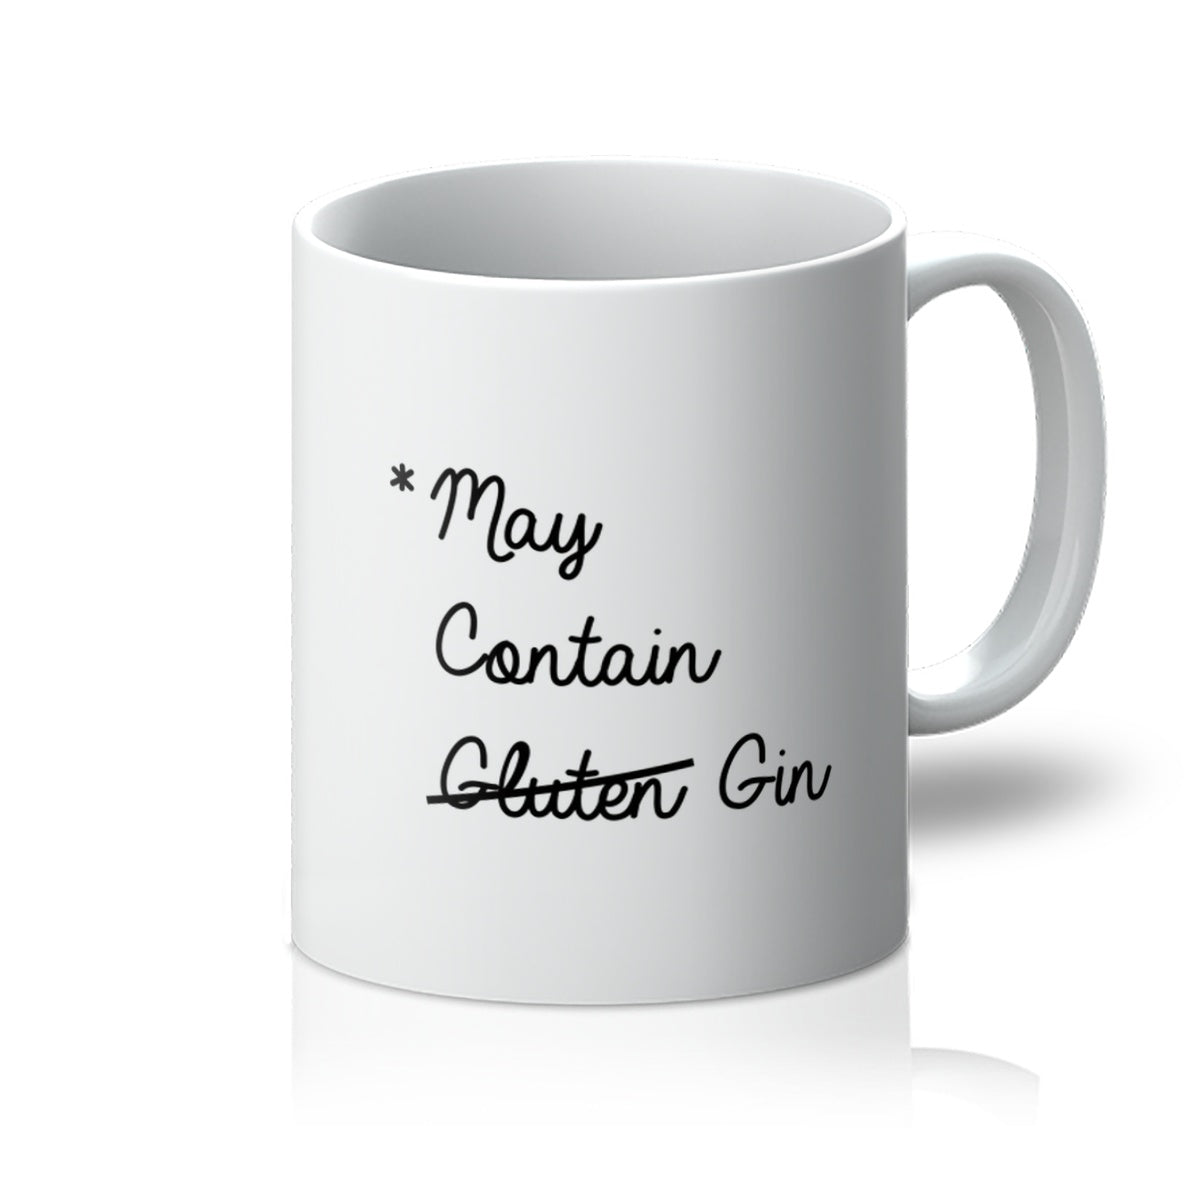 May contain Gin Mug